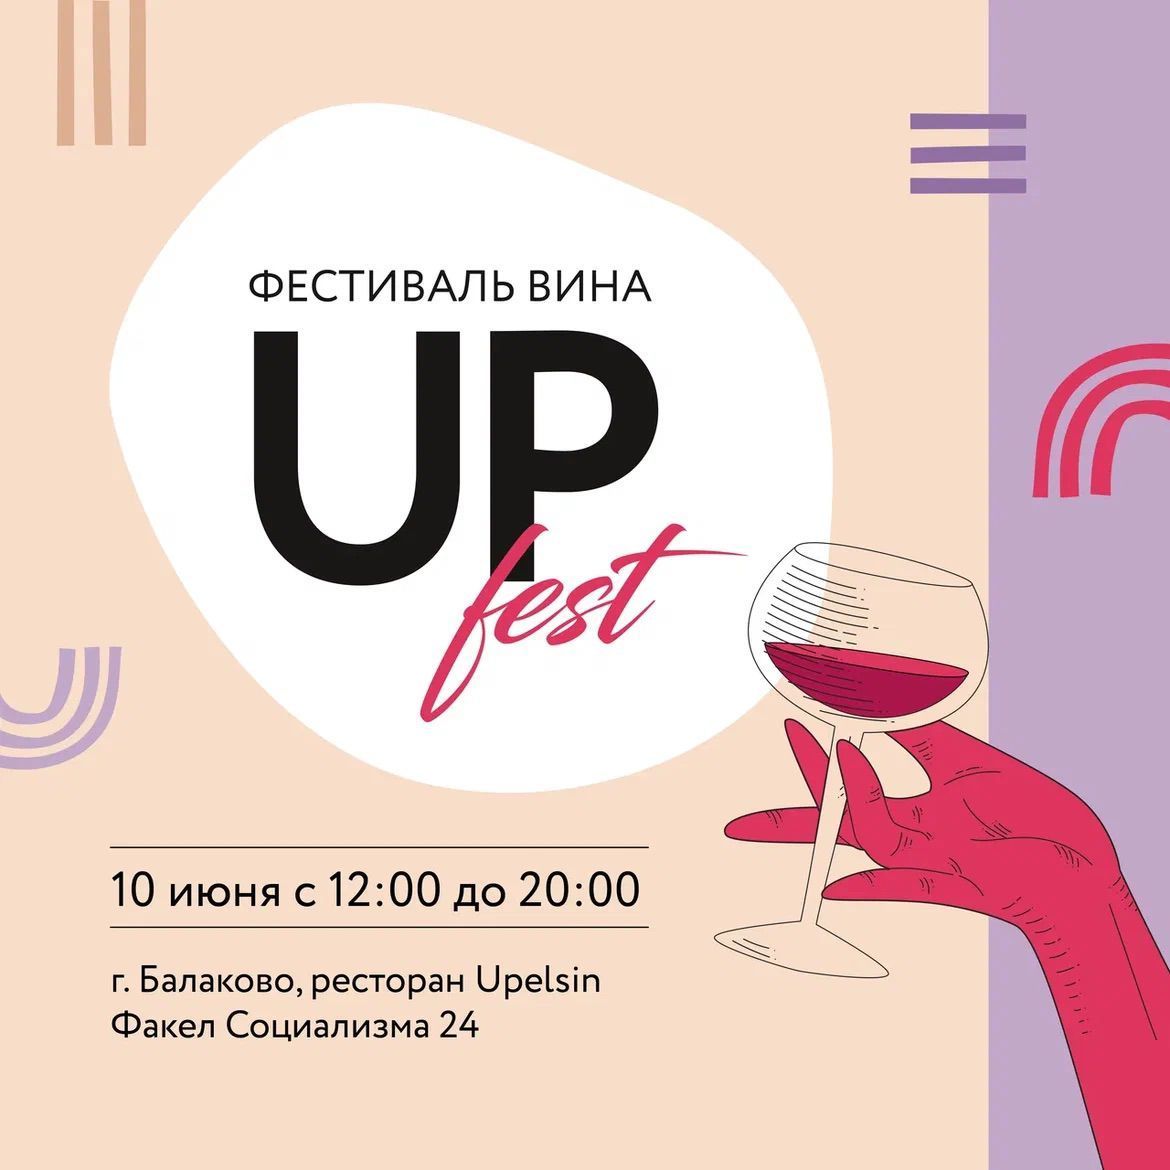 UPfest - Большое событие для всех ценителей вина! 